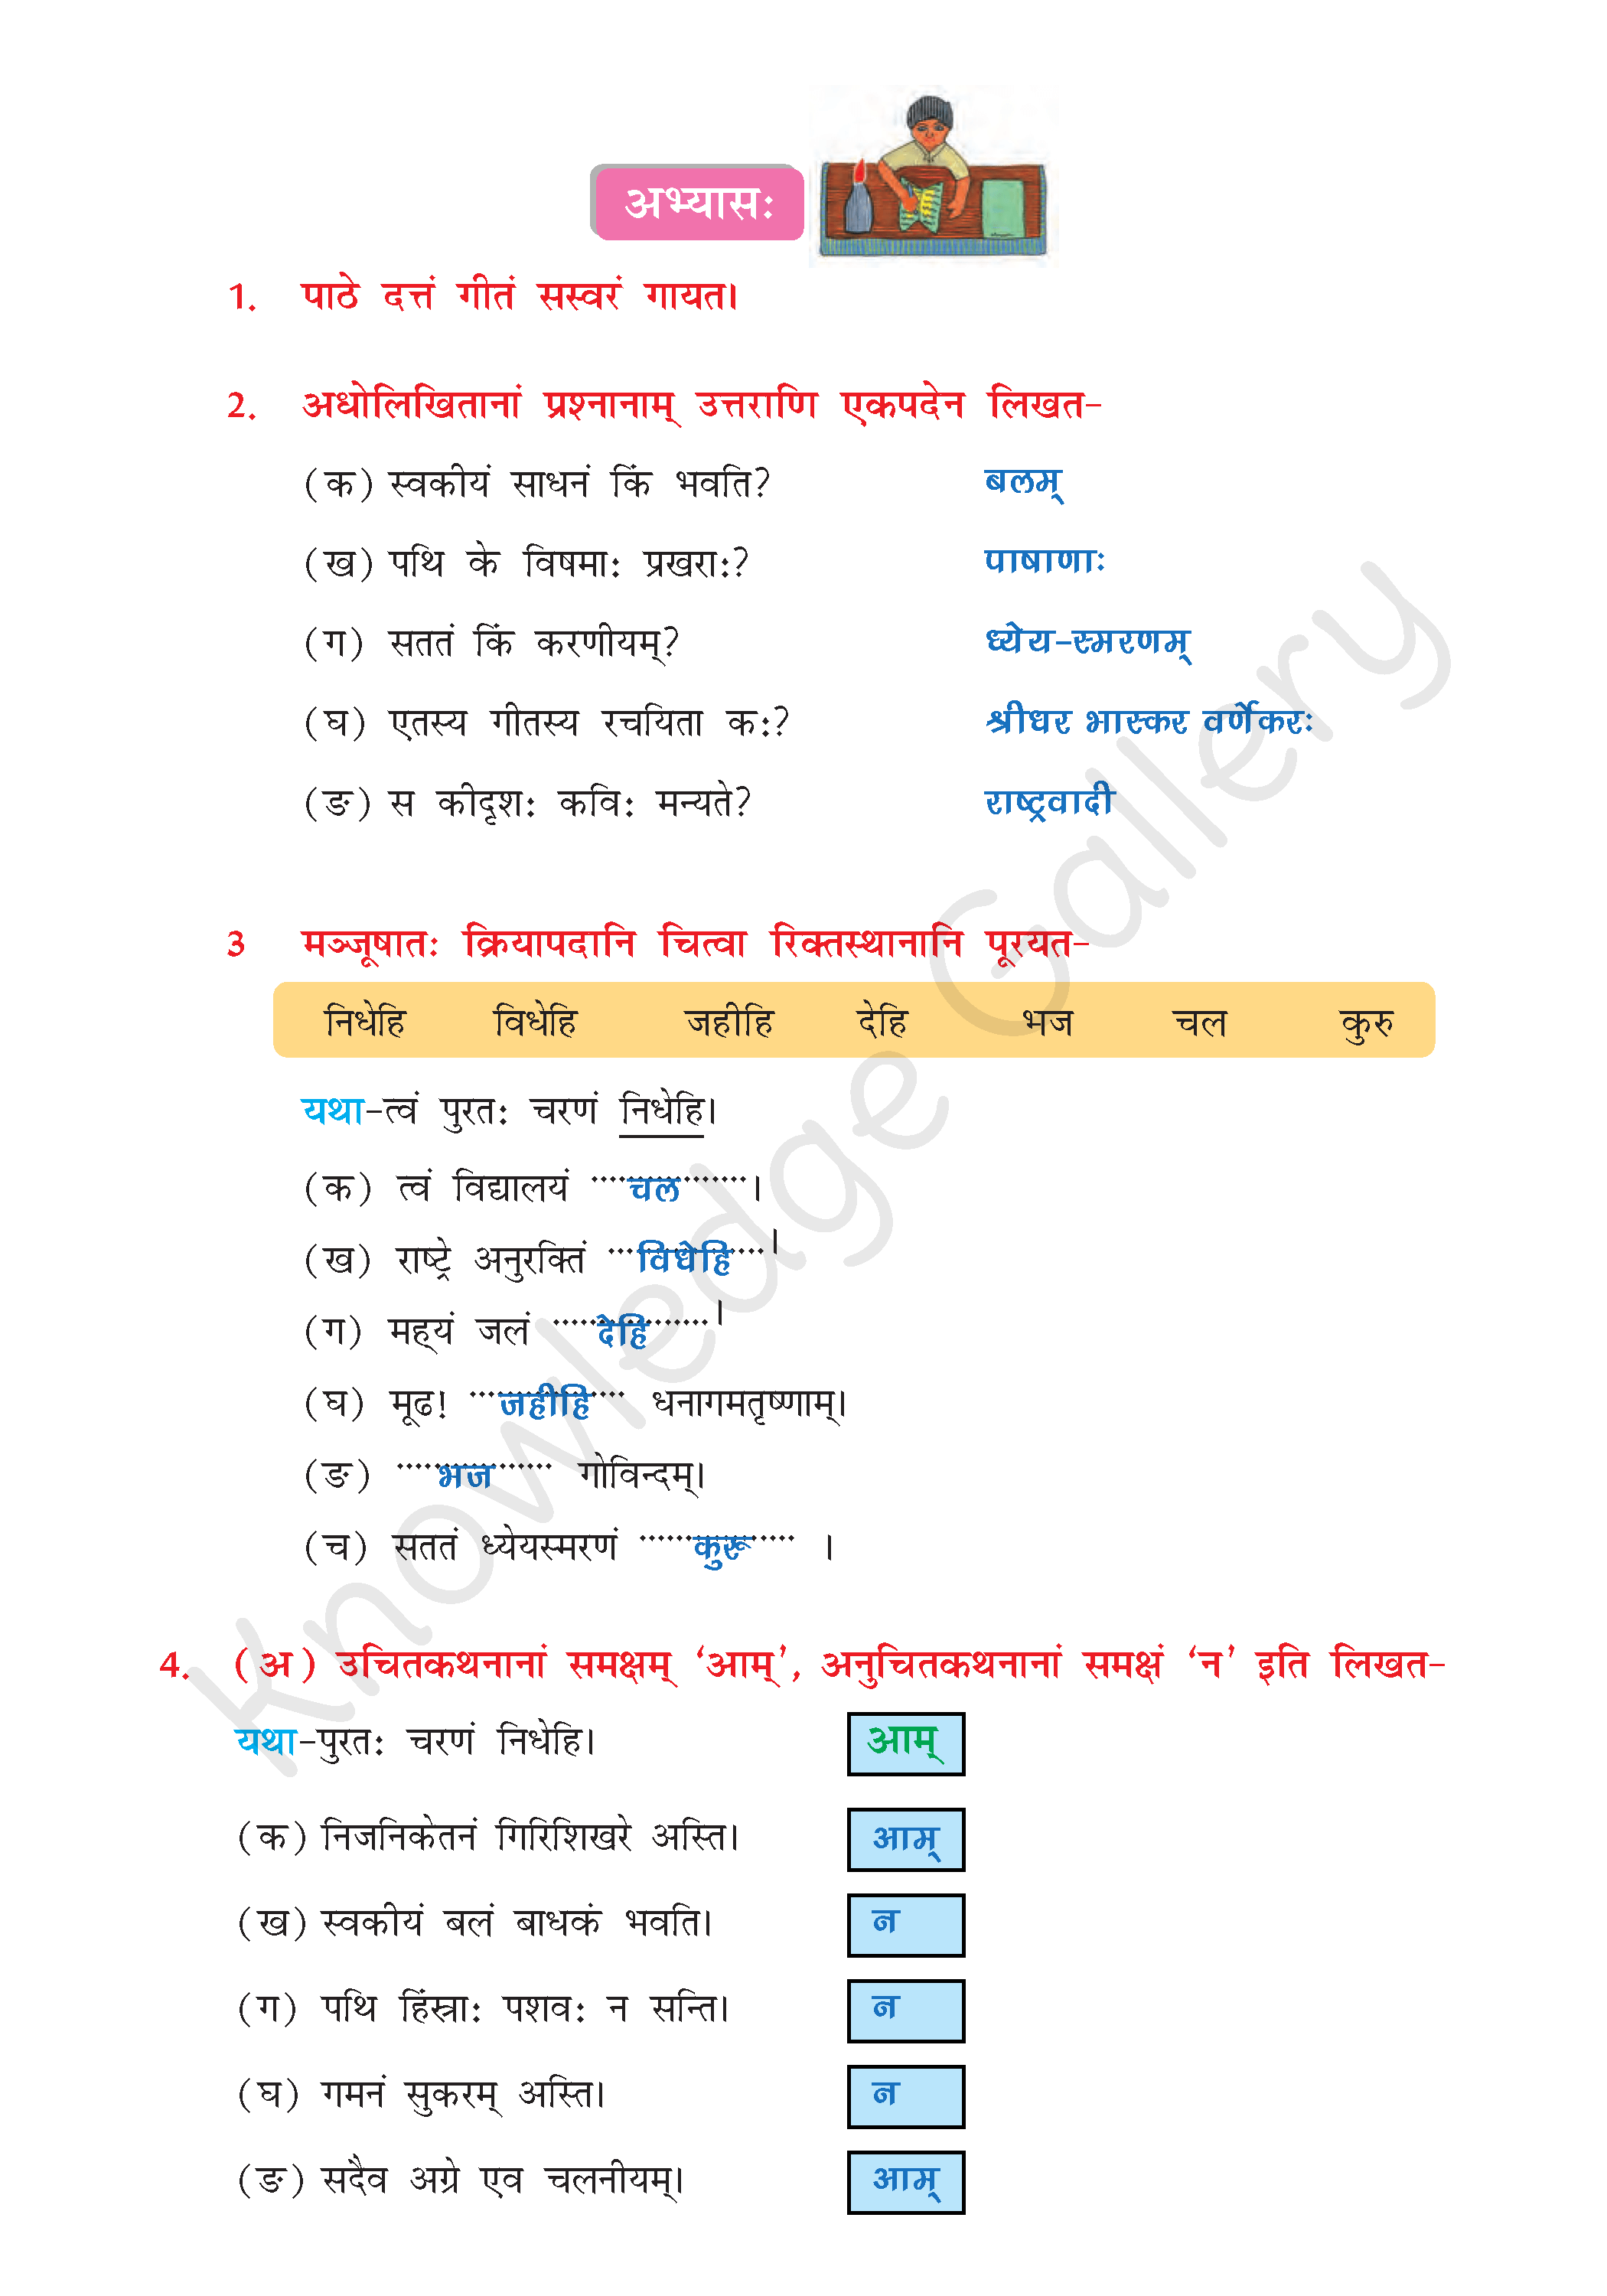 NCERT Solution For Class 8 Sanskrit Chapter 4 part 3